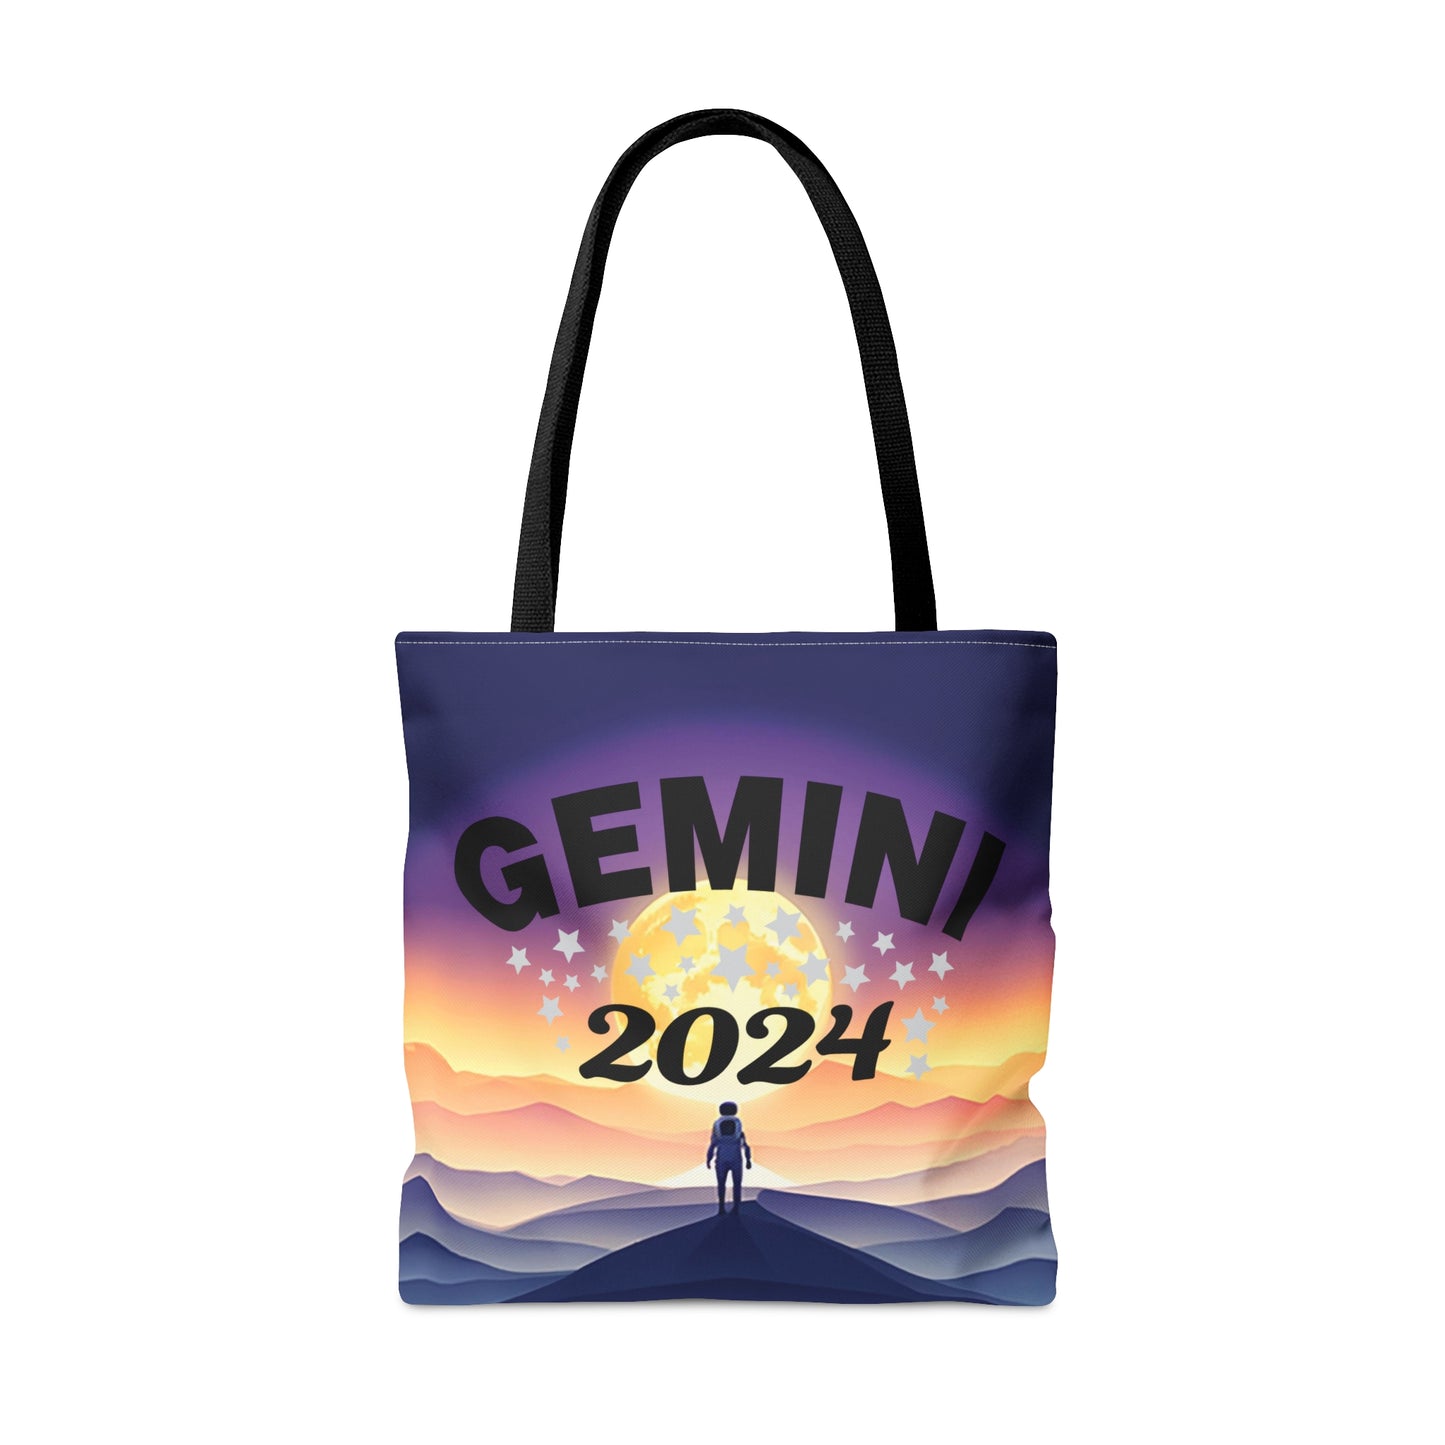 Gemini 2024 Tote Bag